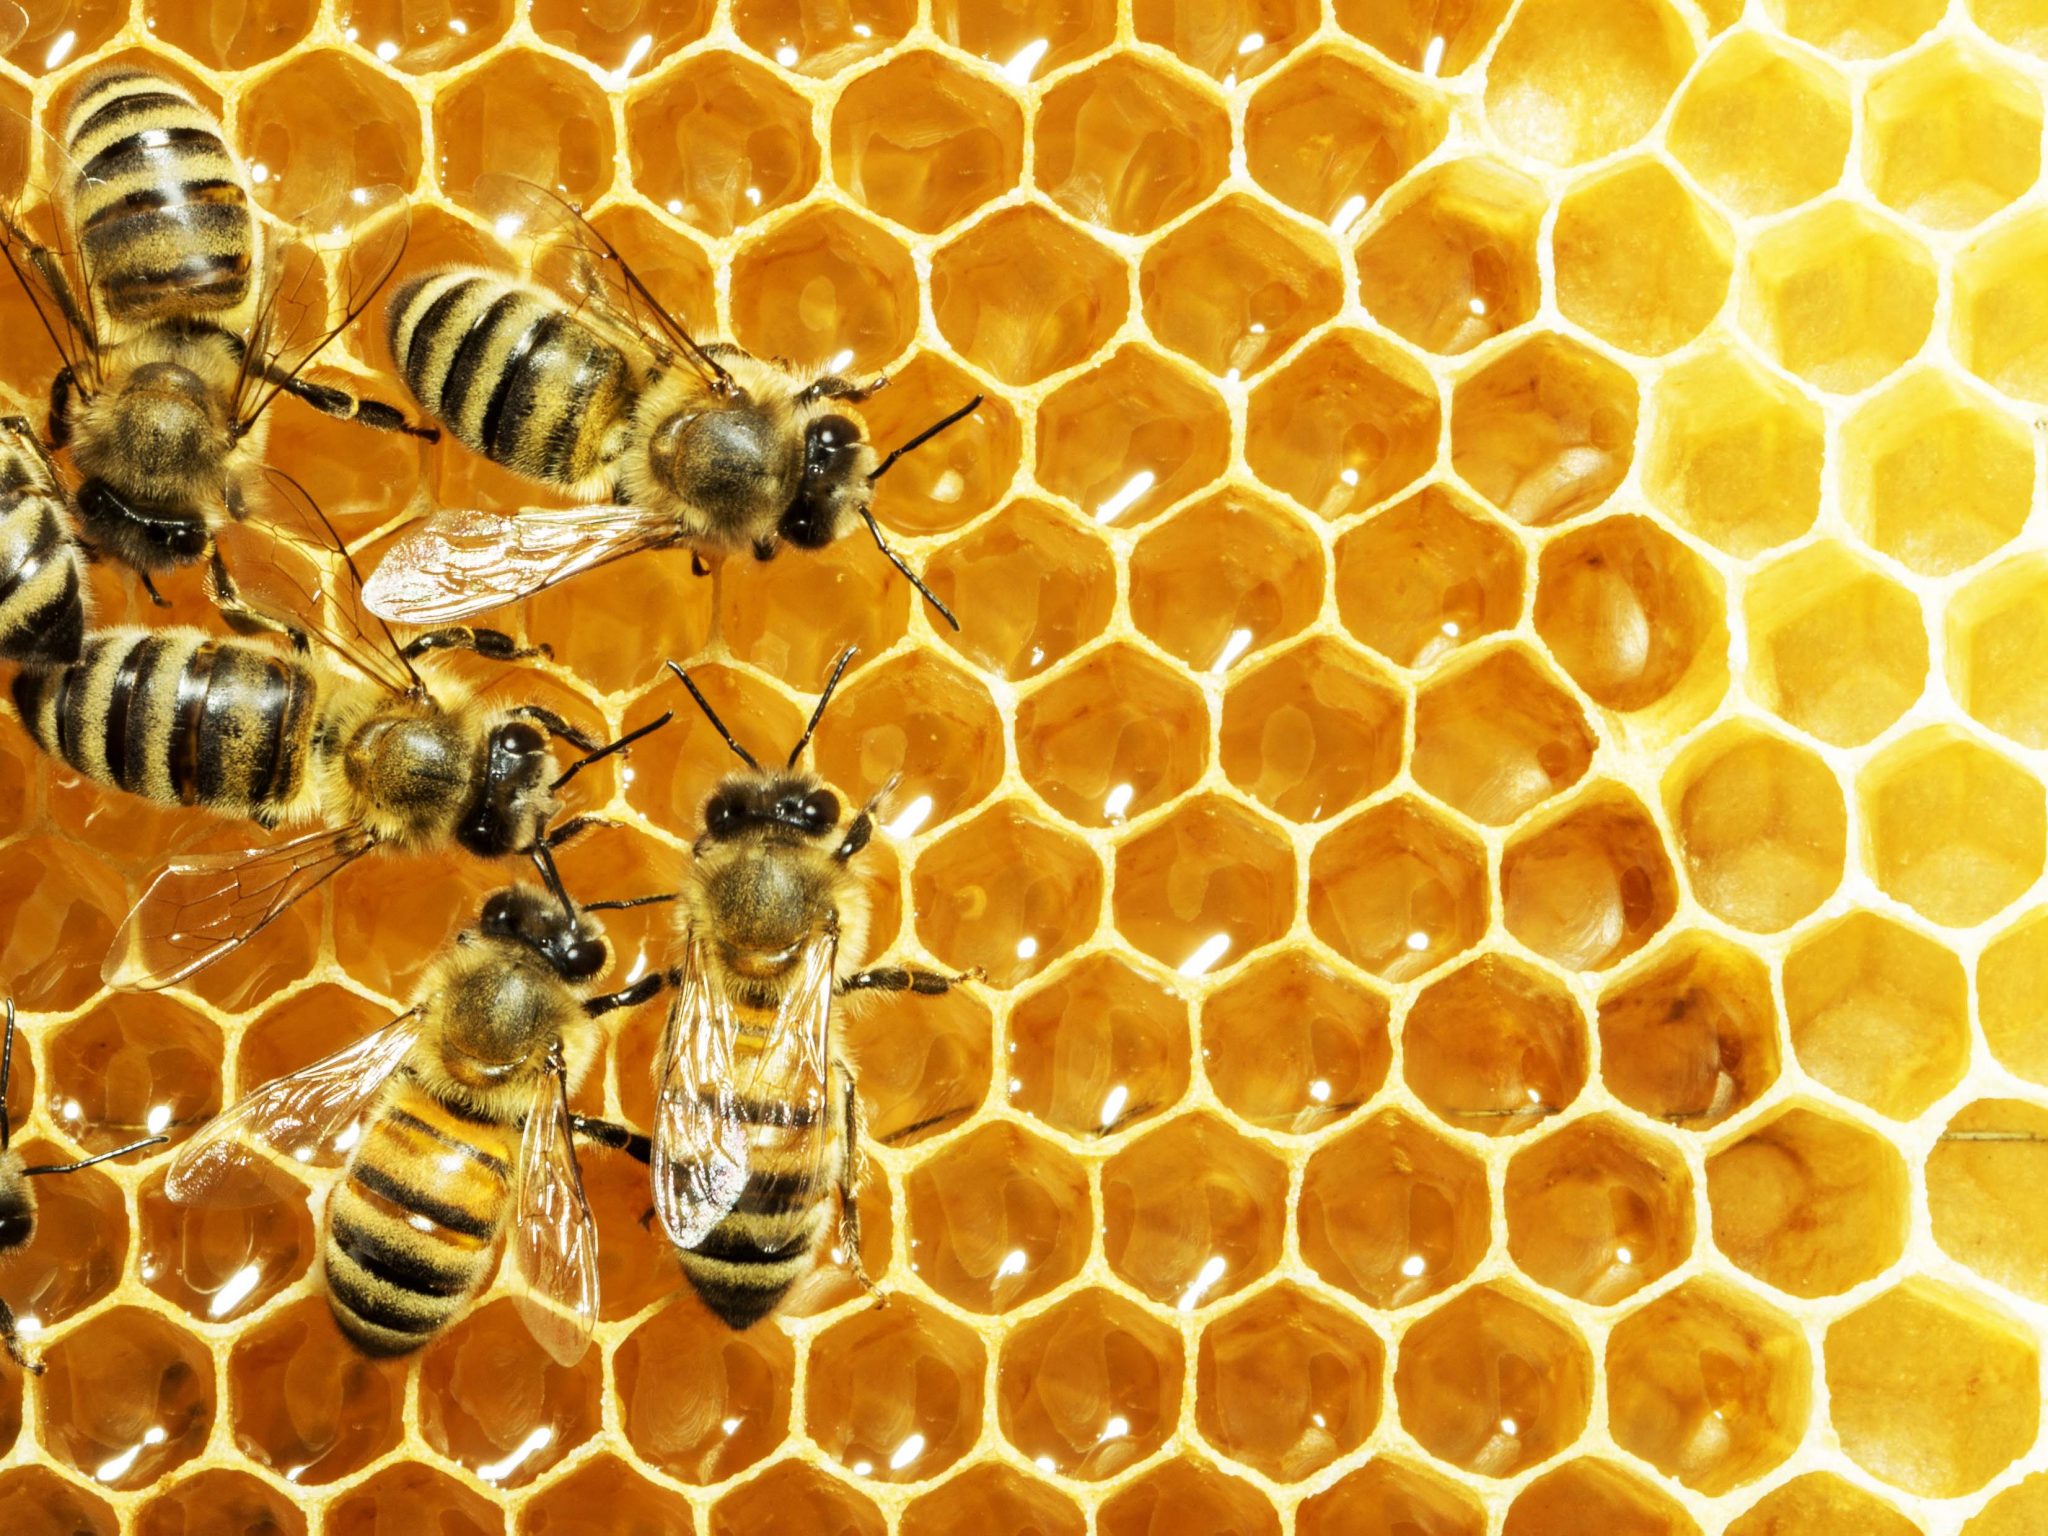 Curso sobre criação de abelhas sem ferrão capacitará apicultores em Goiás para atividade sustentável